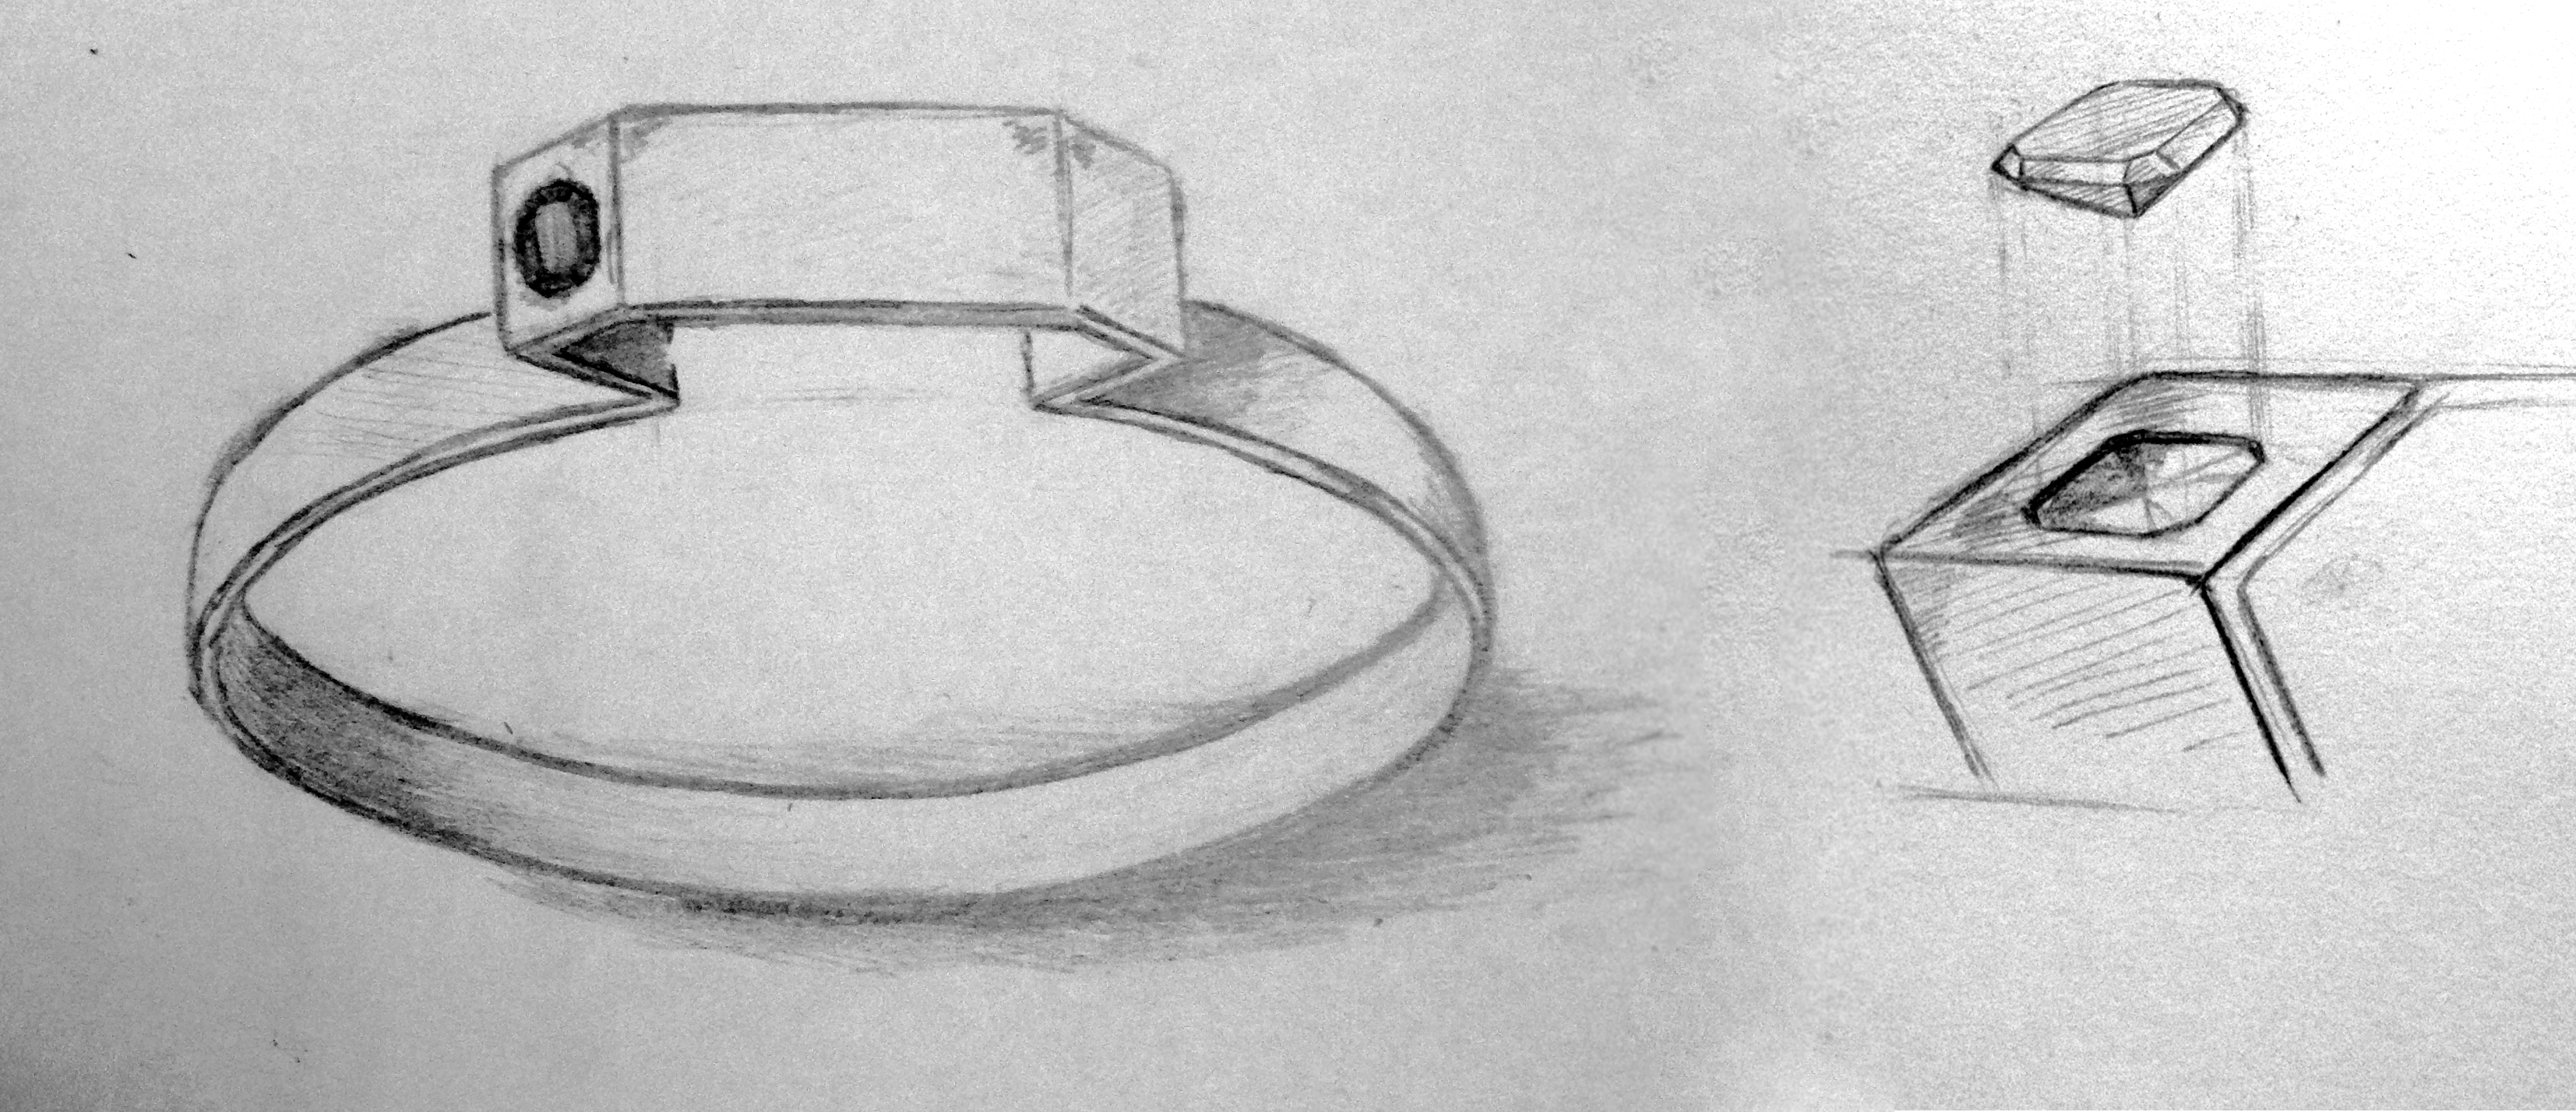 Эскиз ювелирного изделия - кольцо с камнем.